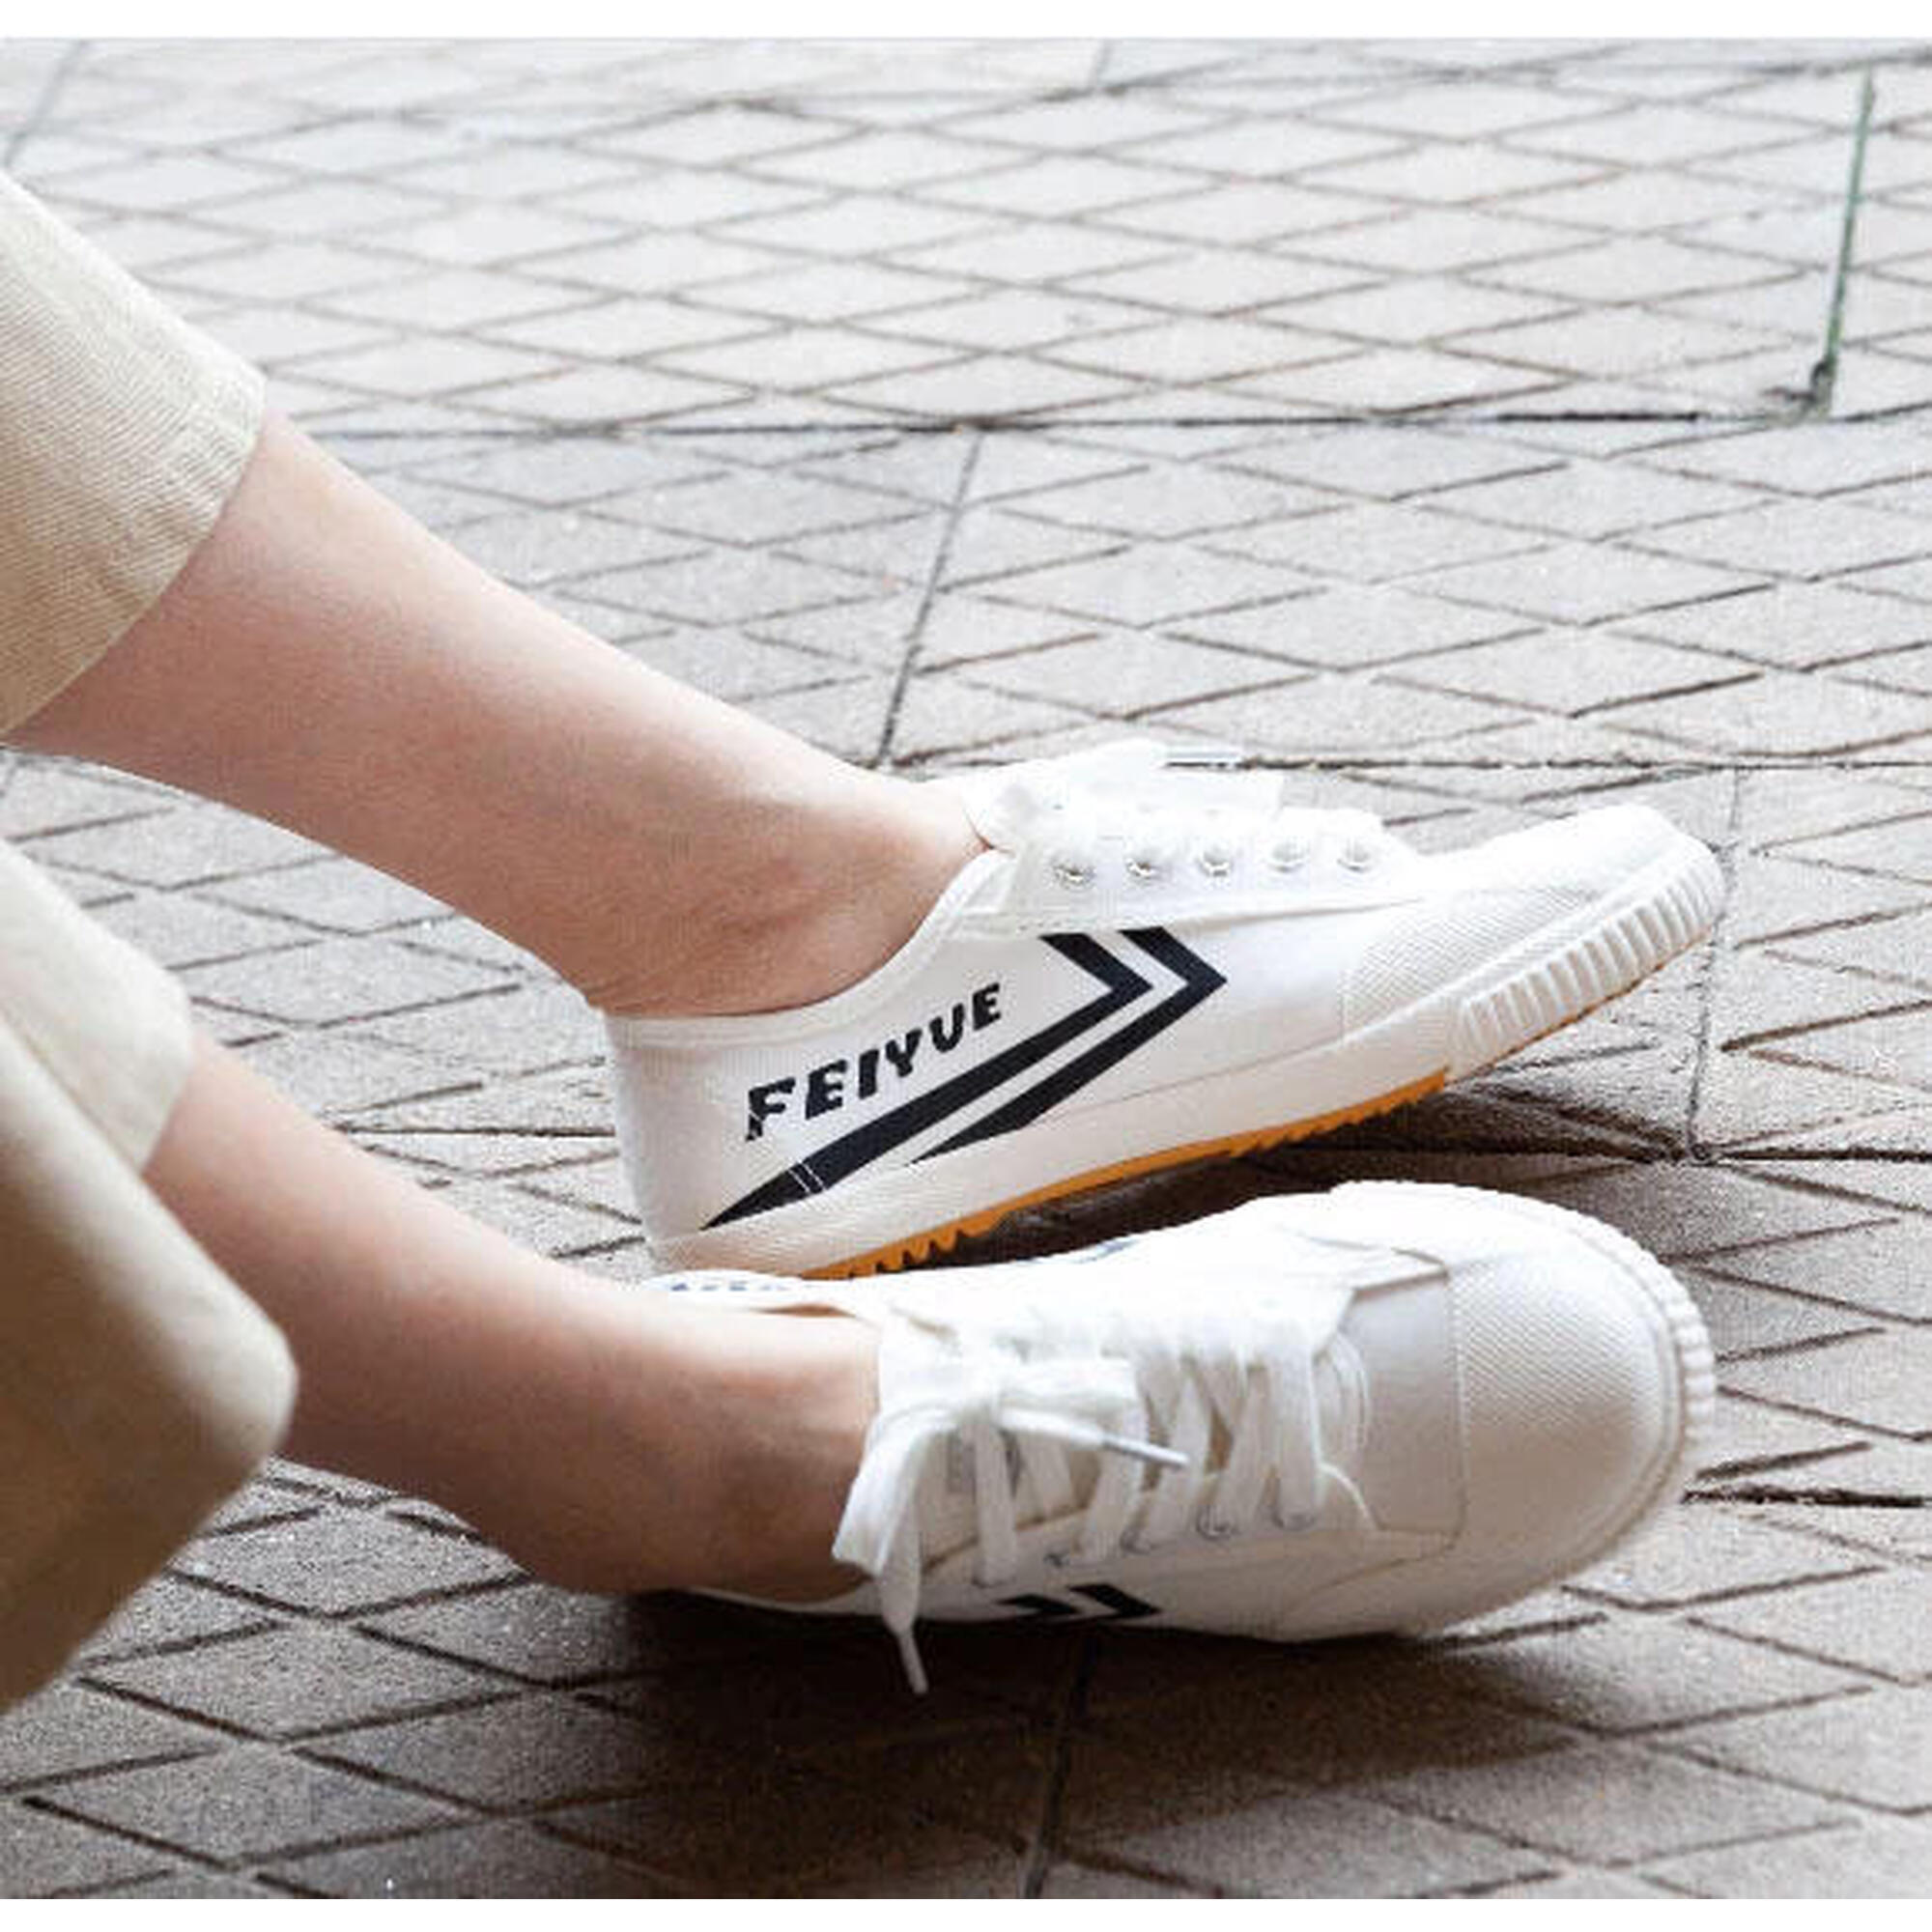 硫化橡膠鞋底運動鞋 - 白色/黑色